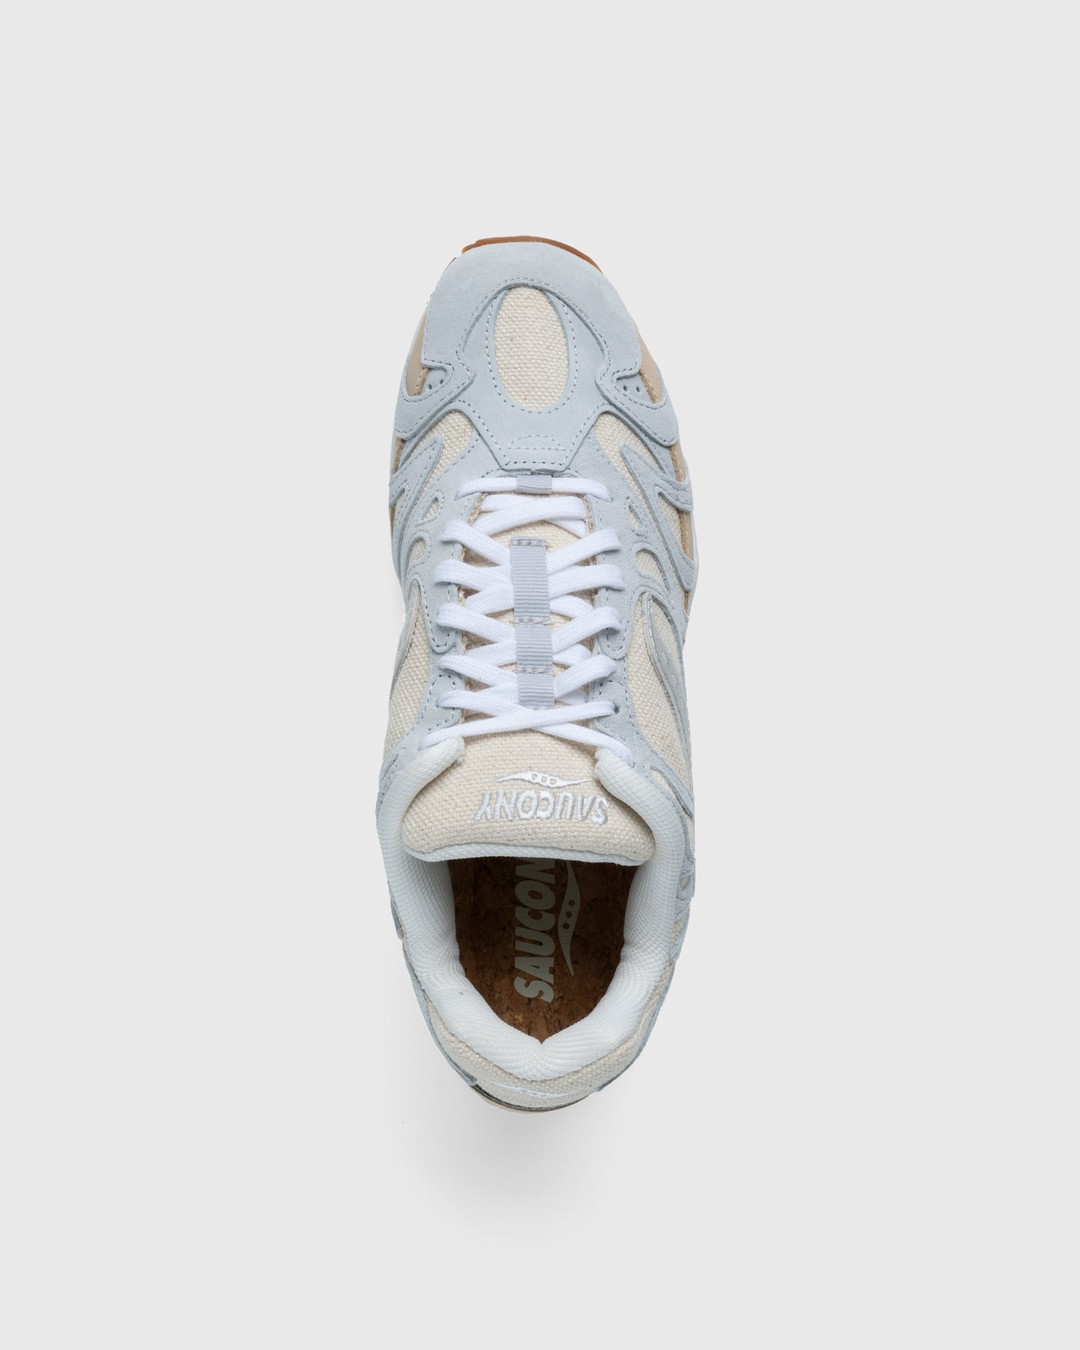 Saucony – Grid Azura 2000 Undyed Beige - Low Top Sneakers - Beige - Image 5